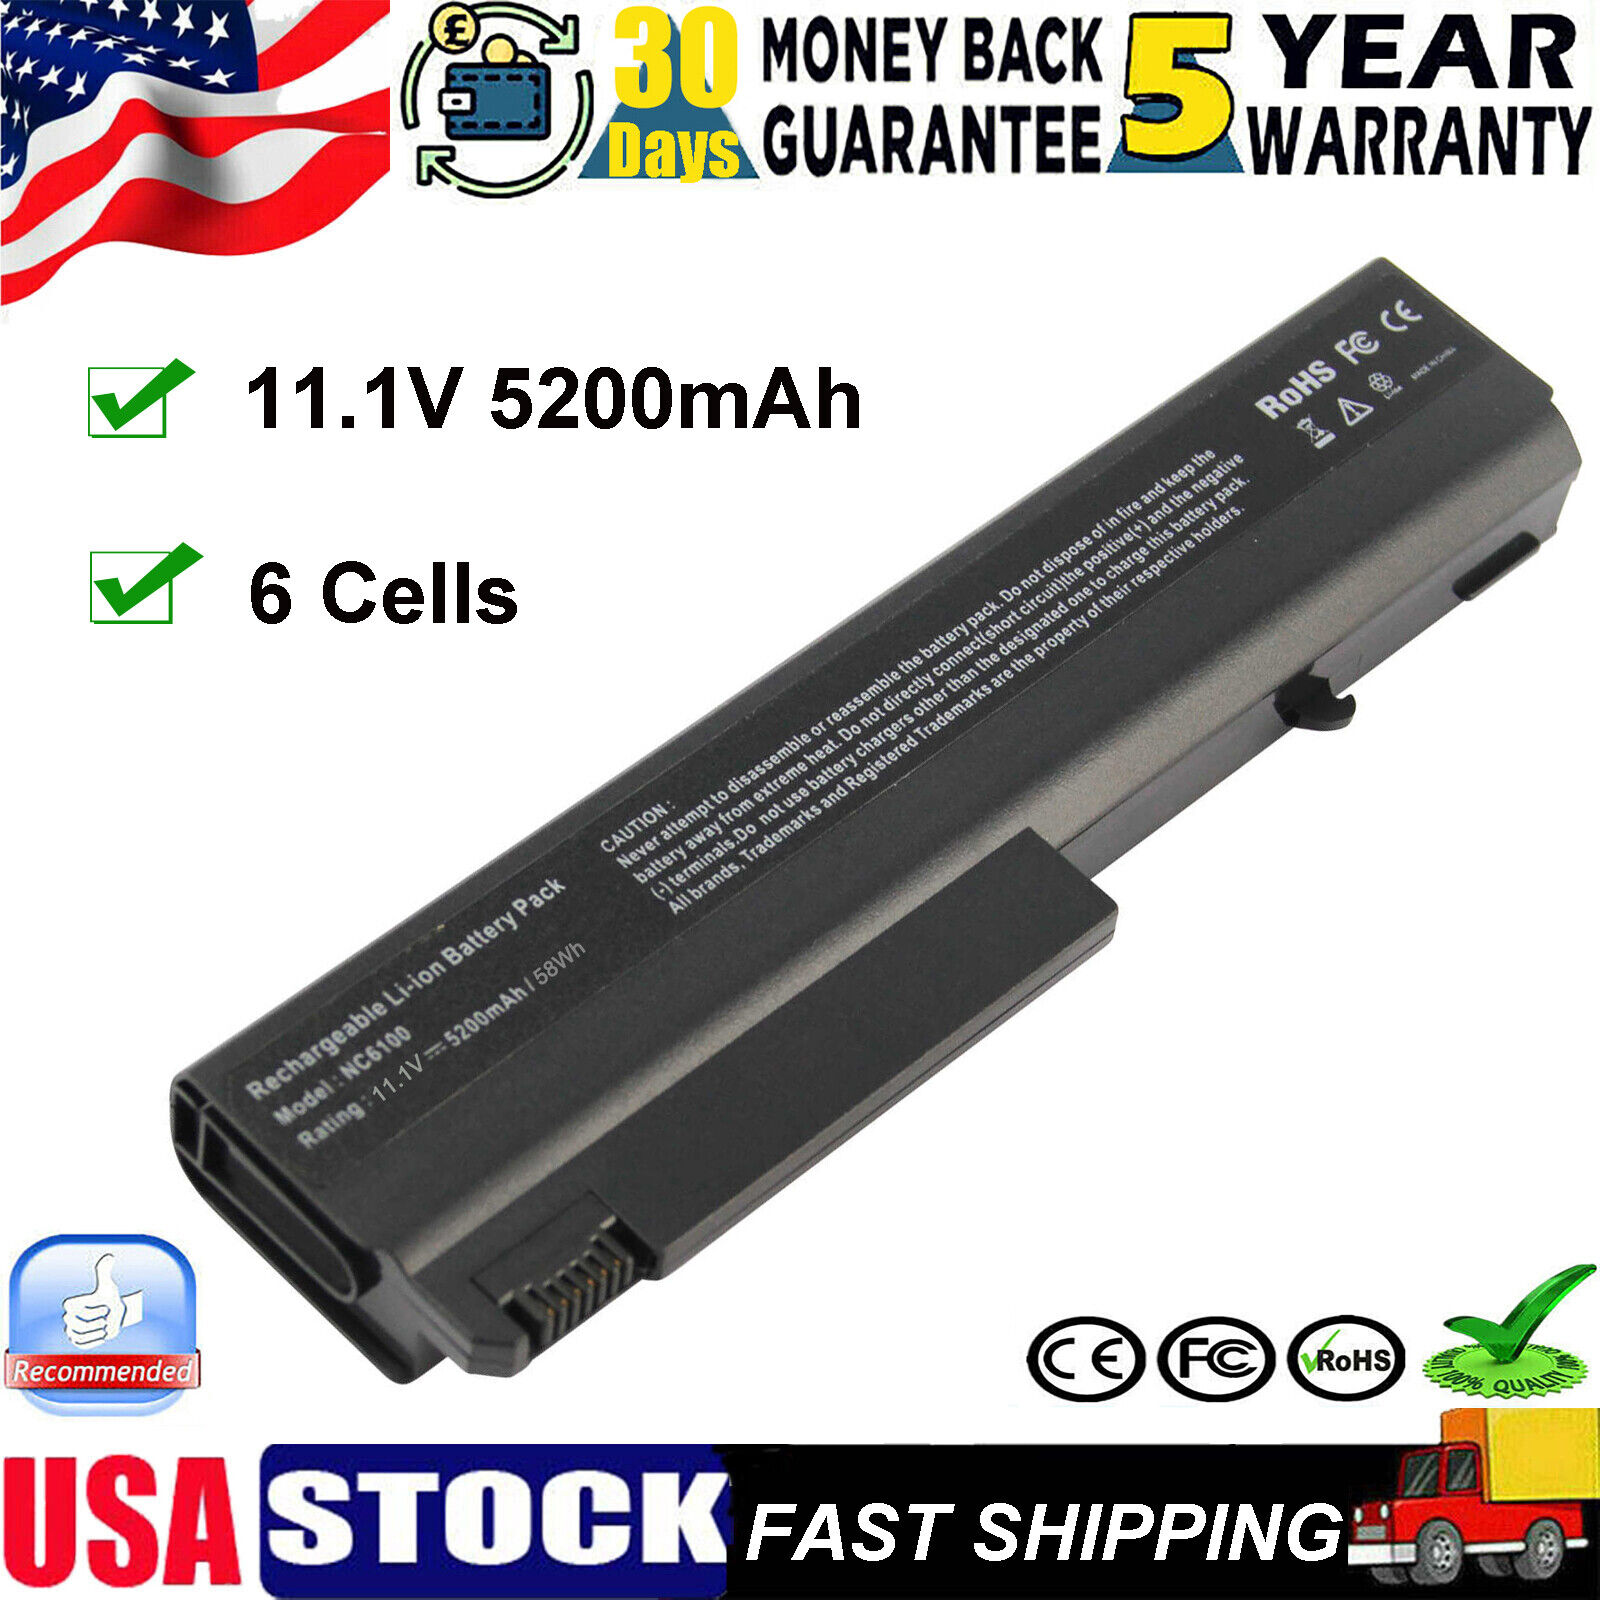 NC6100 Battery for HP Compaq 6510b 6515b 6710b 6710s 6715s 6715b 6910p 5200mAh